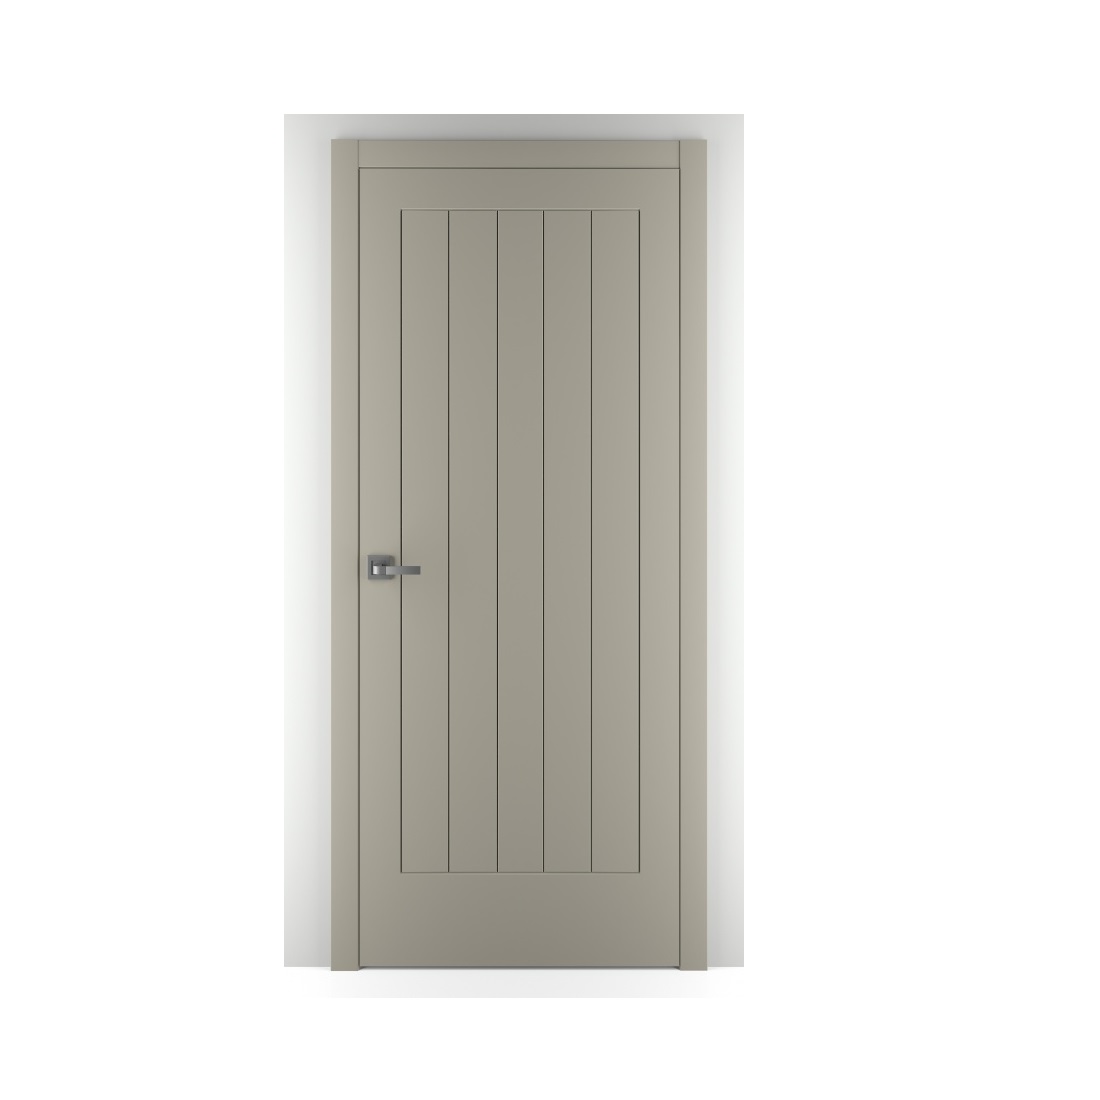 Задор отзывы. Межкомнатная дверь ПГ galera серый. Дверь Zadoor ПГ эмаль Art Lite contorno. Дверь межкомнатная серая эмаль 7004 Zadoor. Межкомнатная дверь Zadoor Art-Lite ПГ Венеция эмаль.